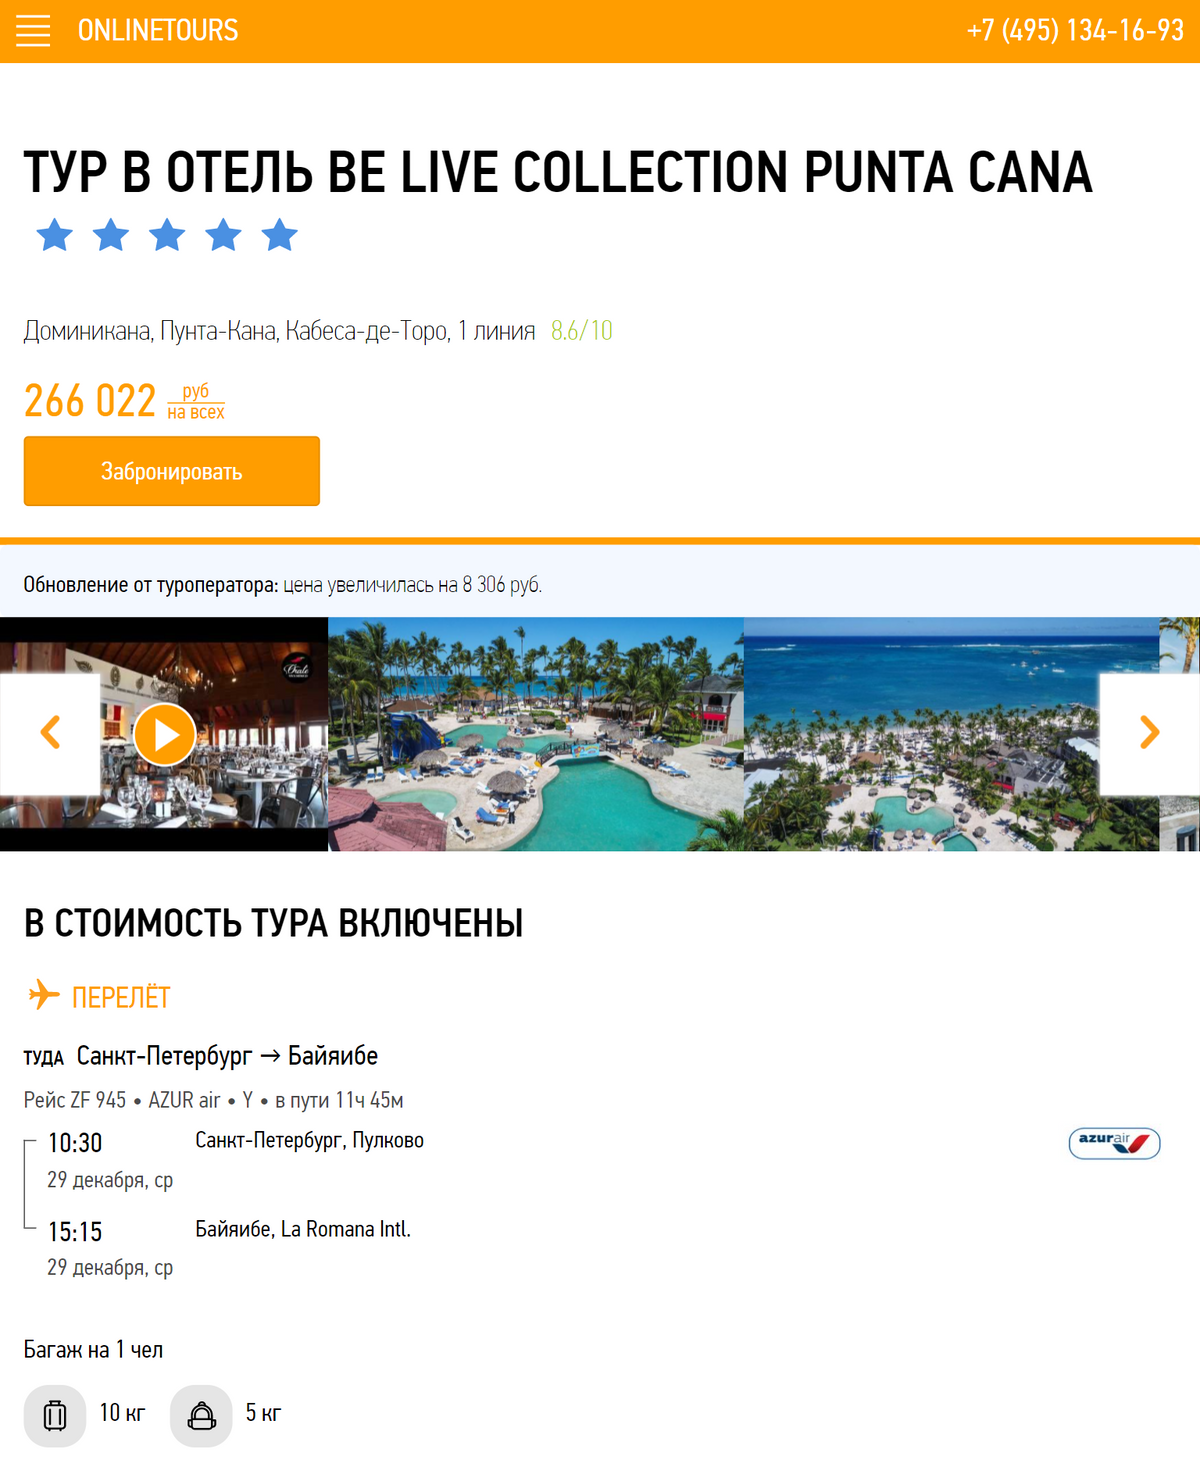 Путевка на пять ночей в отель Be Live Collection Punta Cana в декабре стоит 266 022 <span class=ruble>Р</span> на двоих. В нее включено питание, перелет из Петербурга, трансфер, страховка и улучшенный номер категории «делюкс»